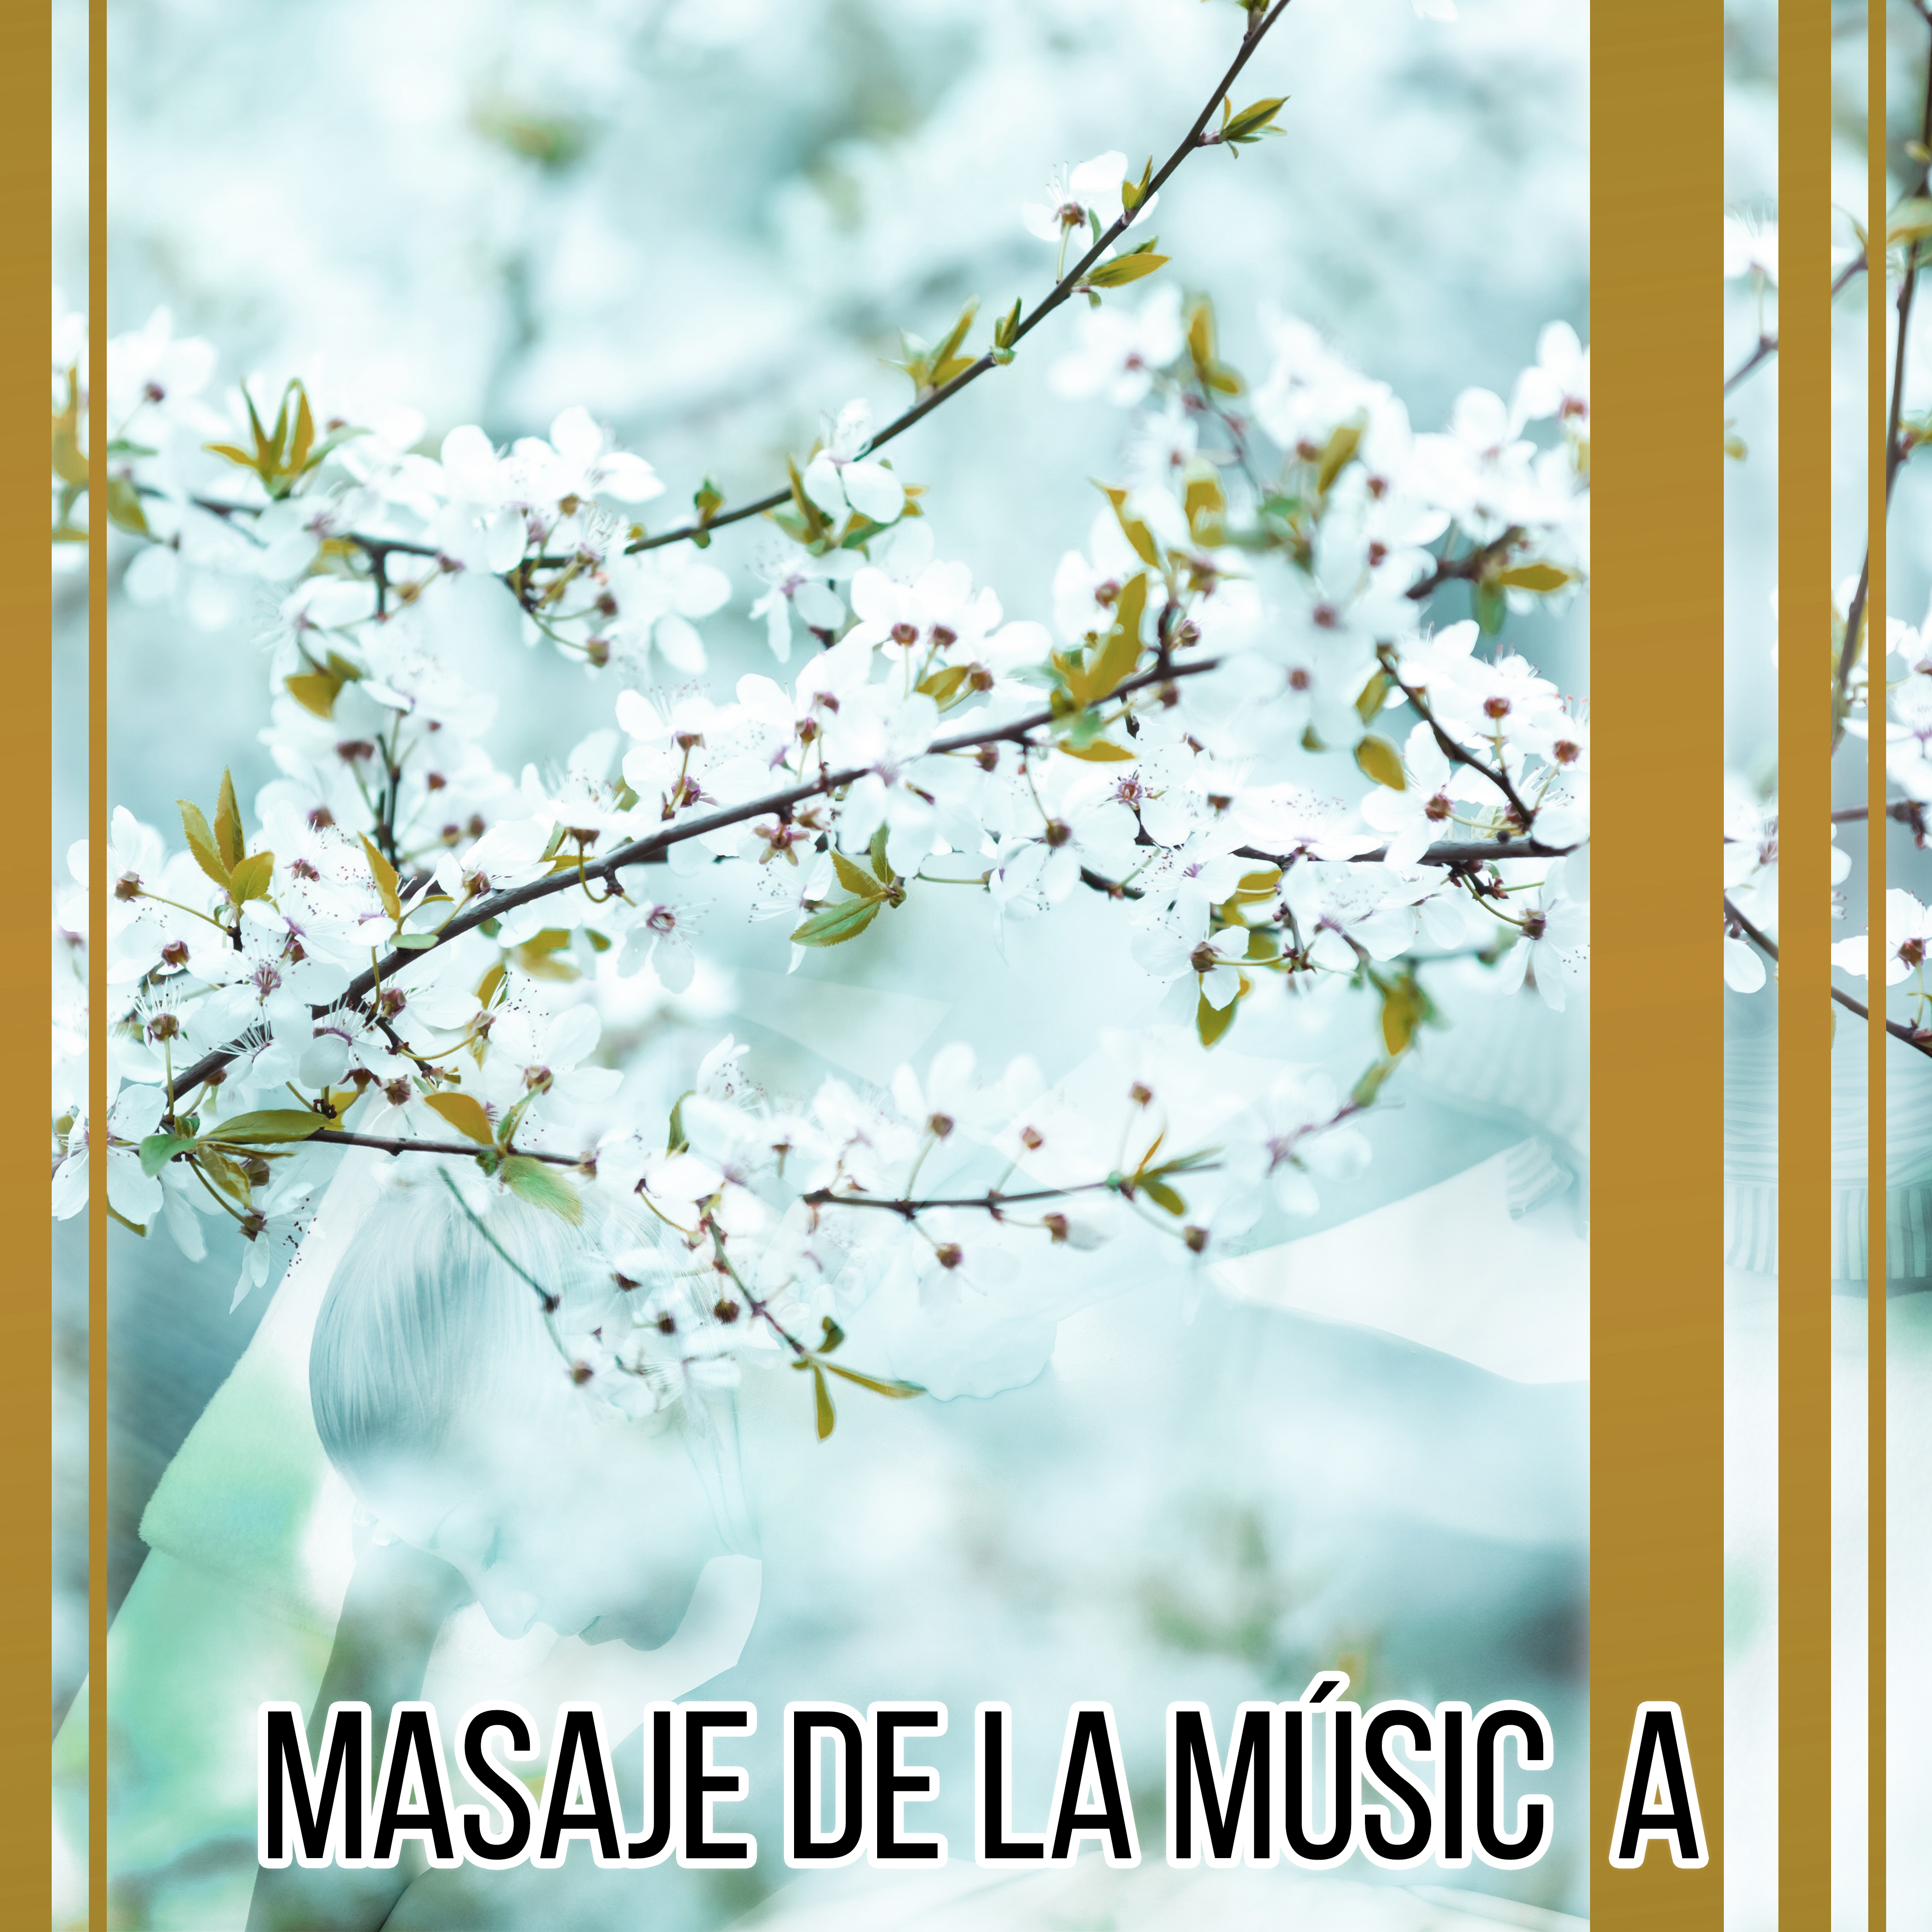 Masaje de la Música - Música Relajante, Masaje, Spa, Bienestar, los Sonidos Suaves de la Naturaleza, Meditación Profunda